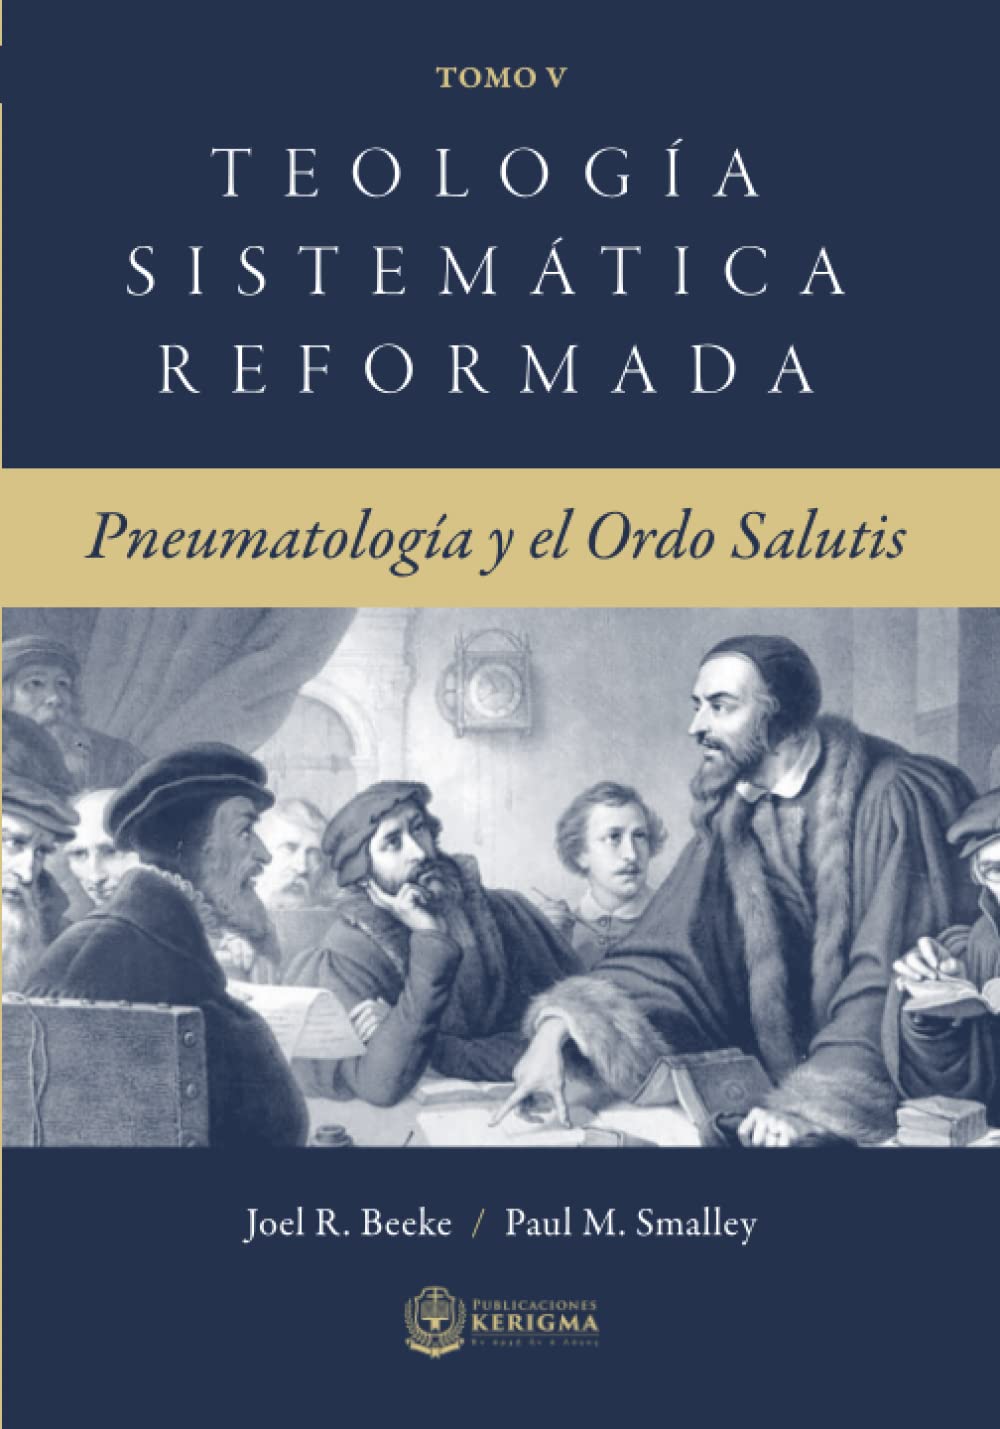 Teología Sistemática Reformada Vol 5 - Pneumatología y el Ordo Salutis